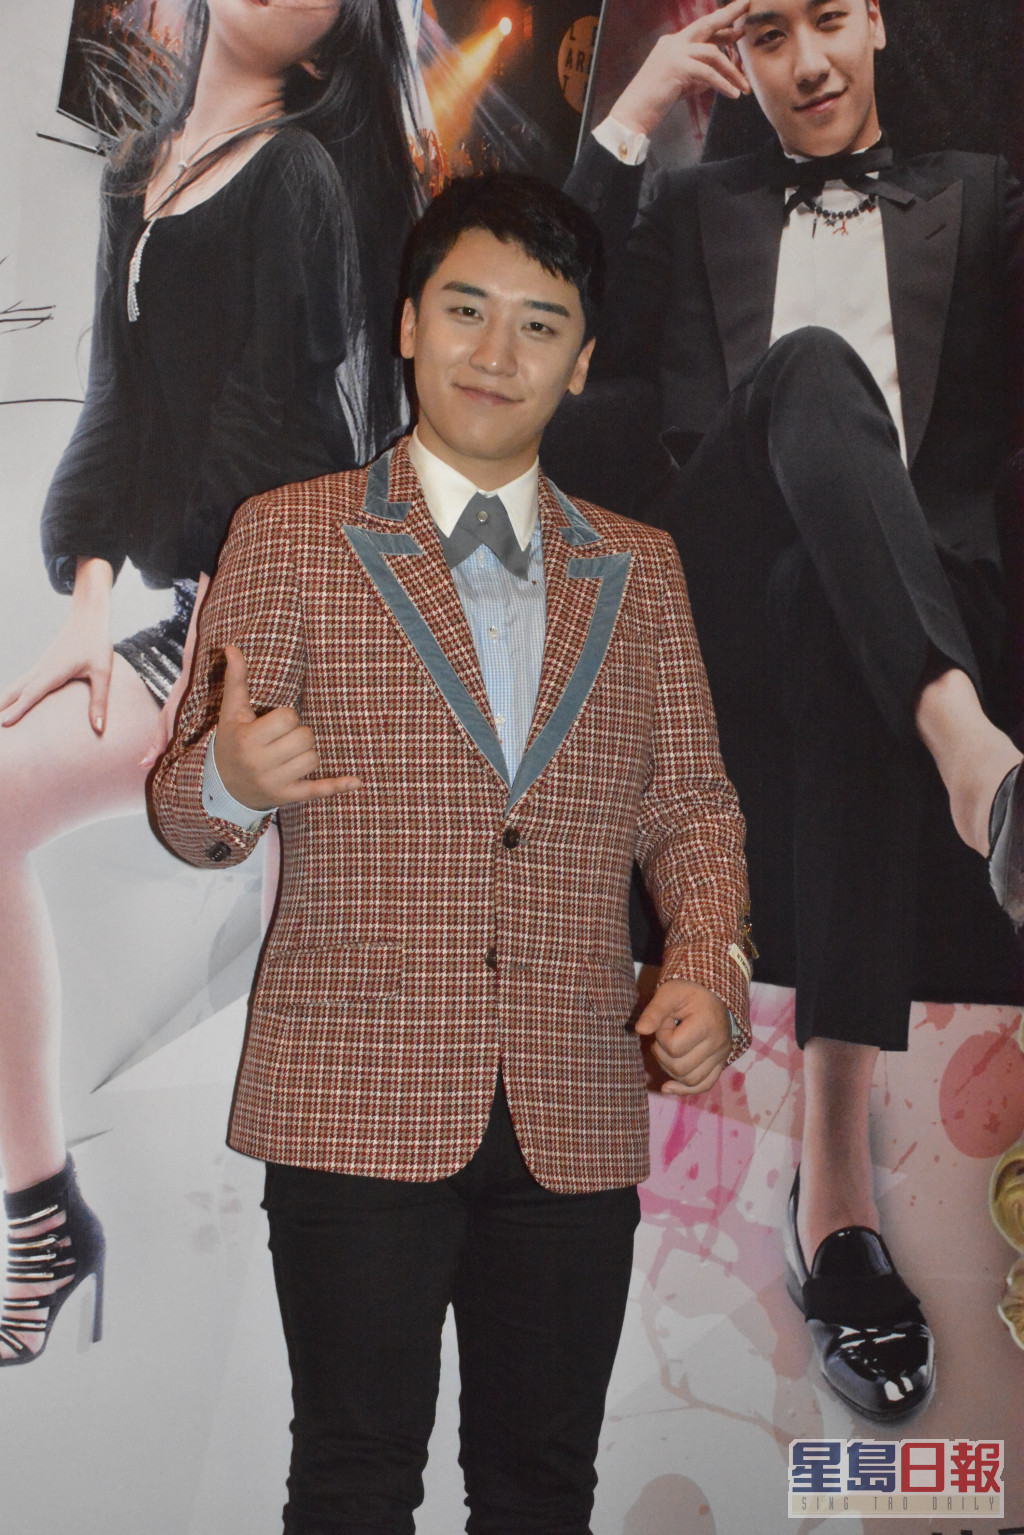 台灣網民普遍估係BIGBANG前成員勝利。